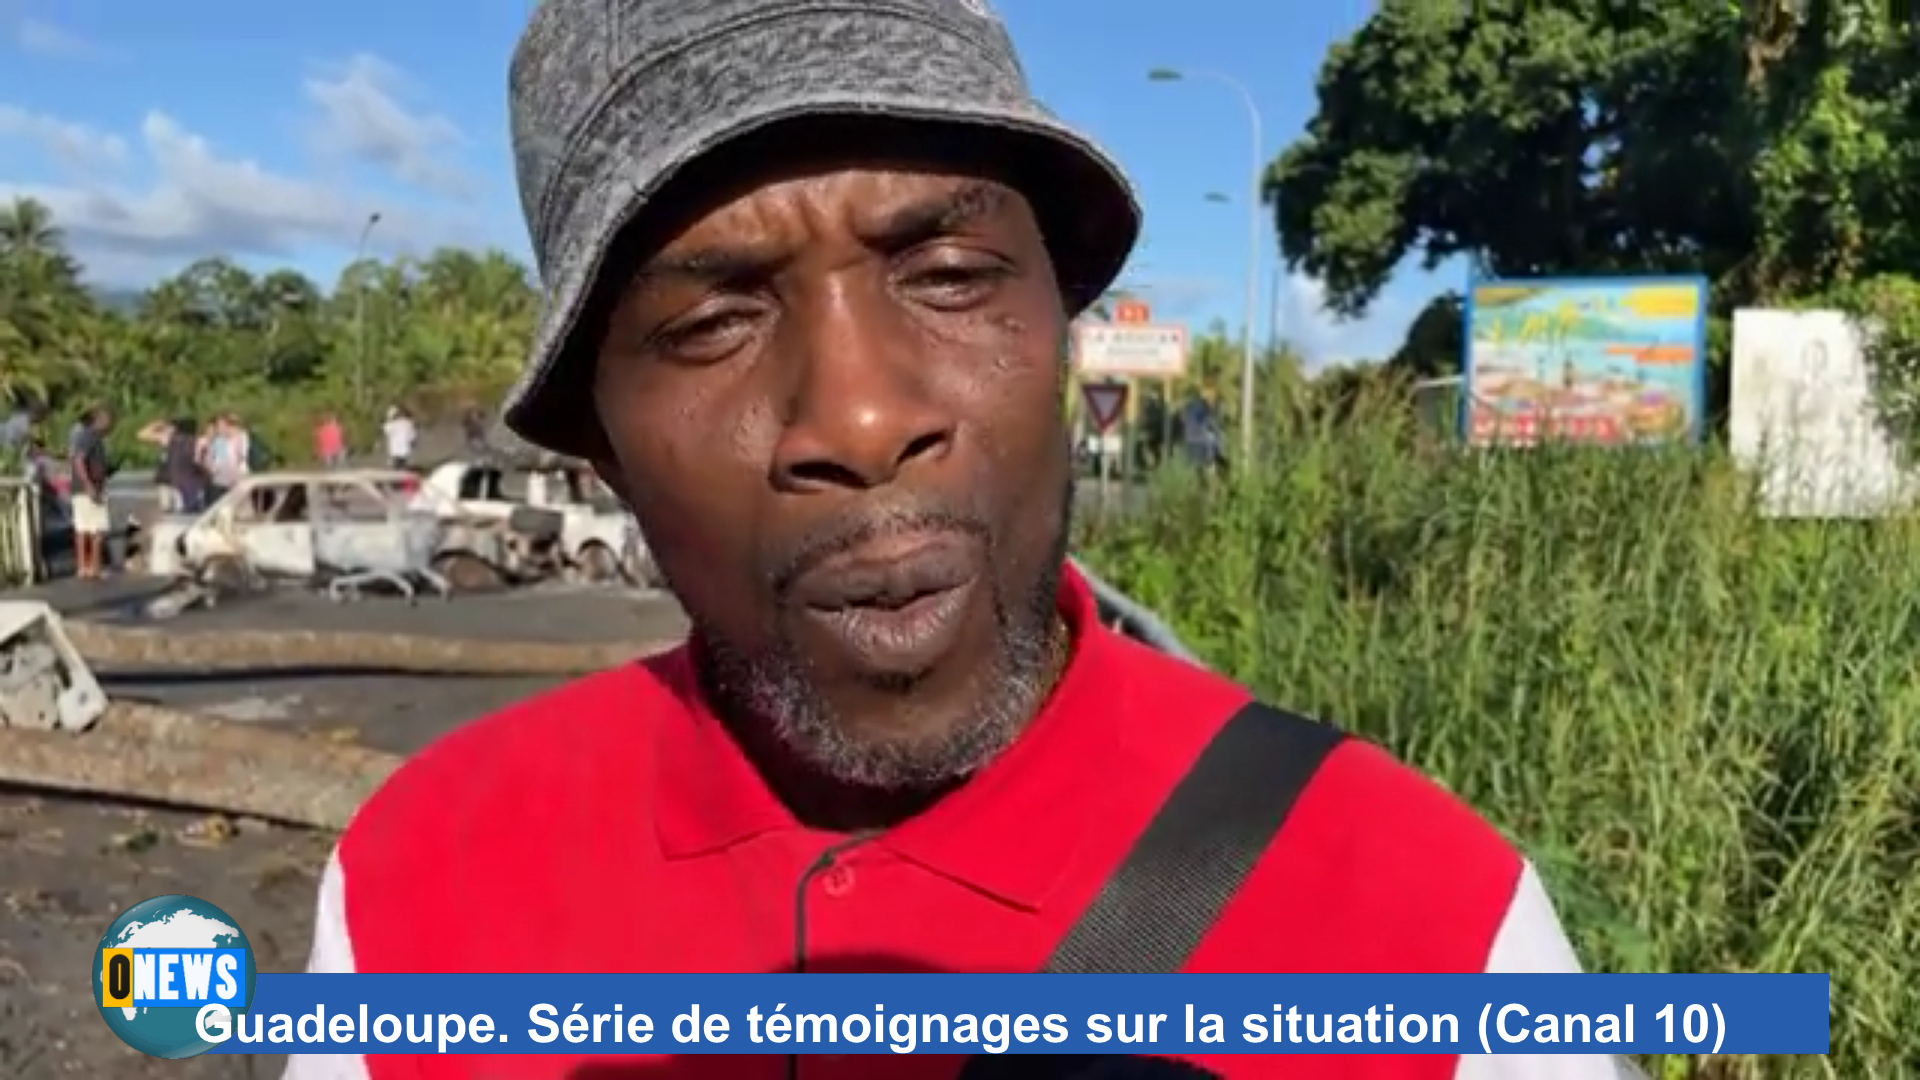 [Vidéo] Guadeloupe. Série de témoignages sur la situation (Canal 10) suite